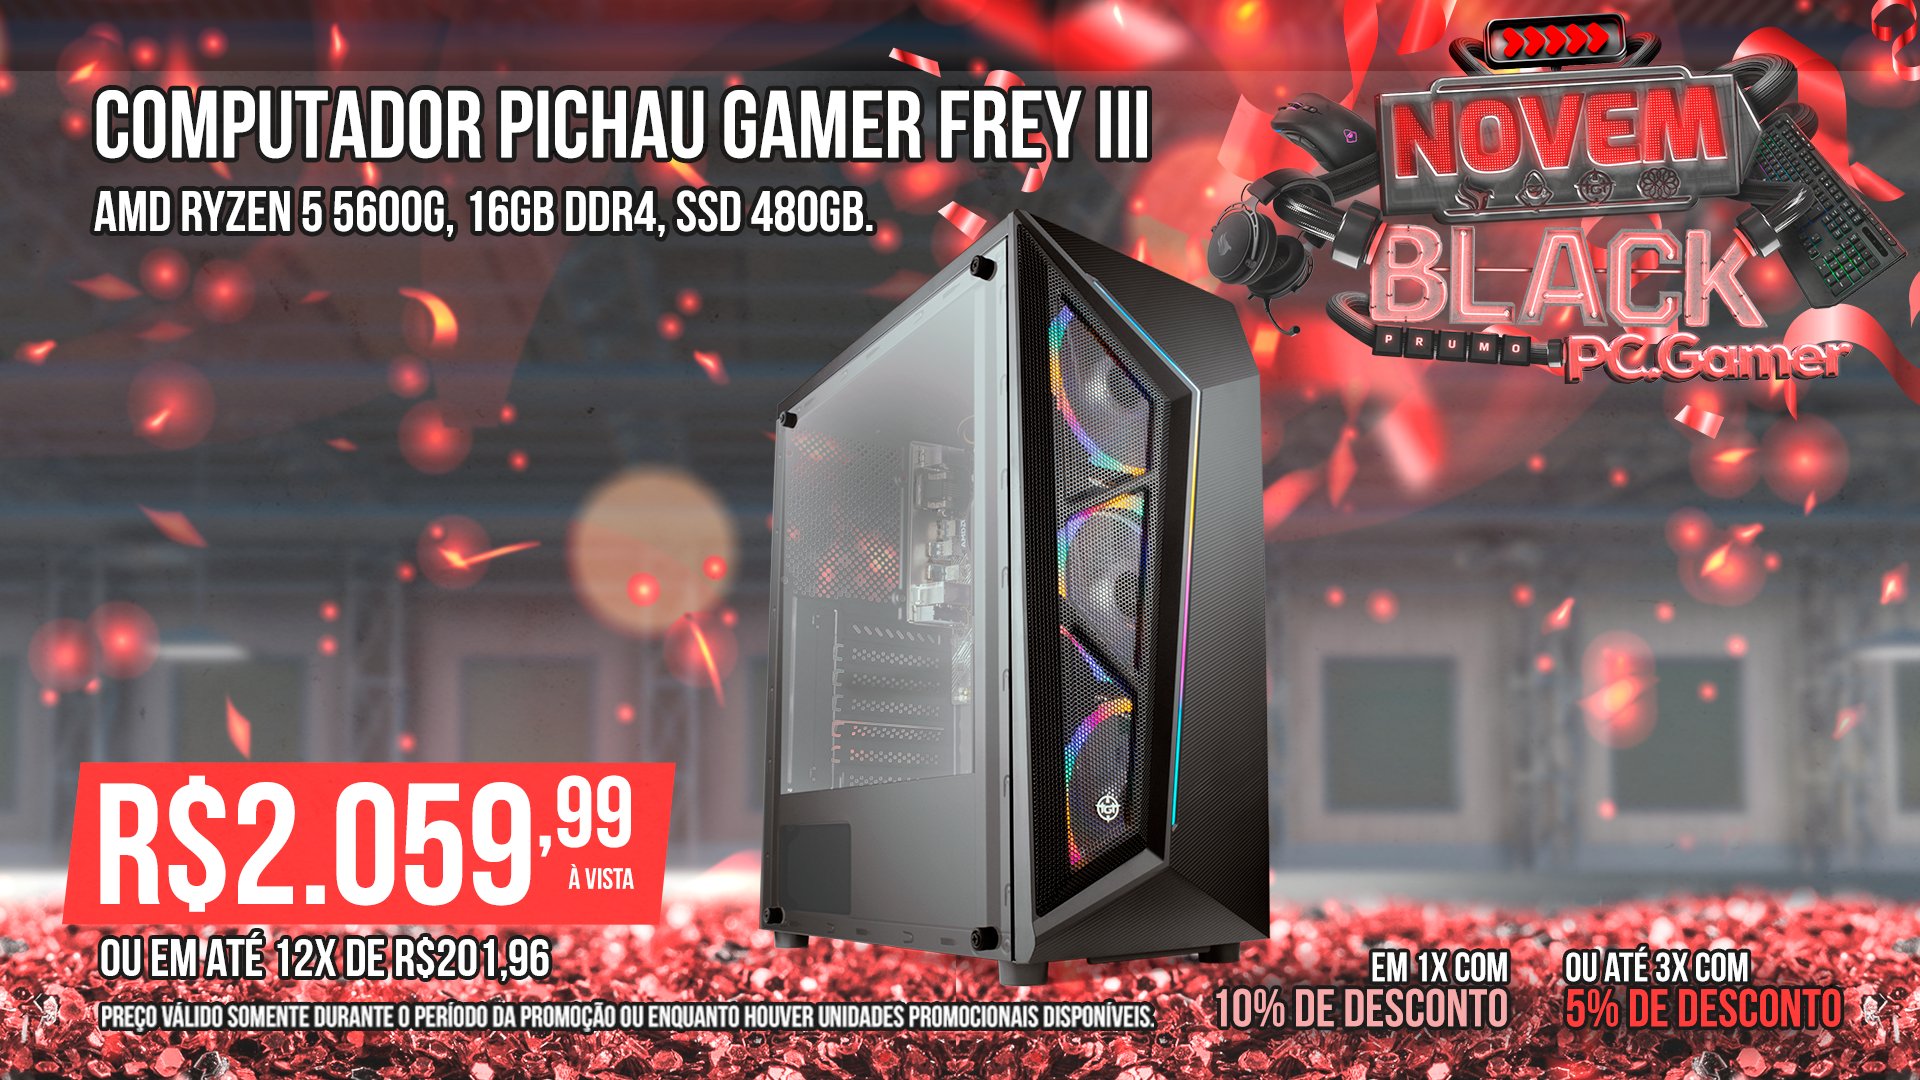 PC Pichau Gamer Frey III, AMD Ryzen 5 5600G, 16GB DDR4, SSD 480GB